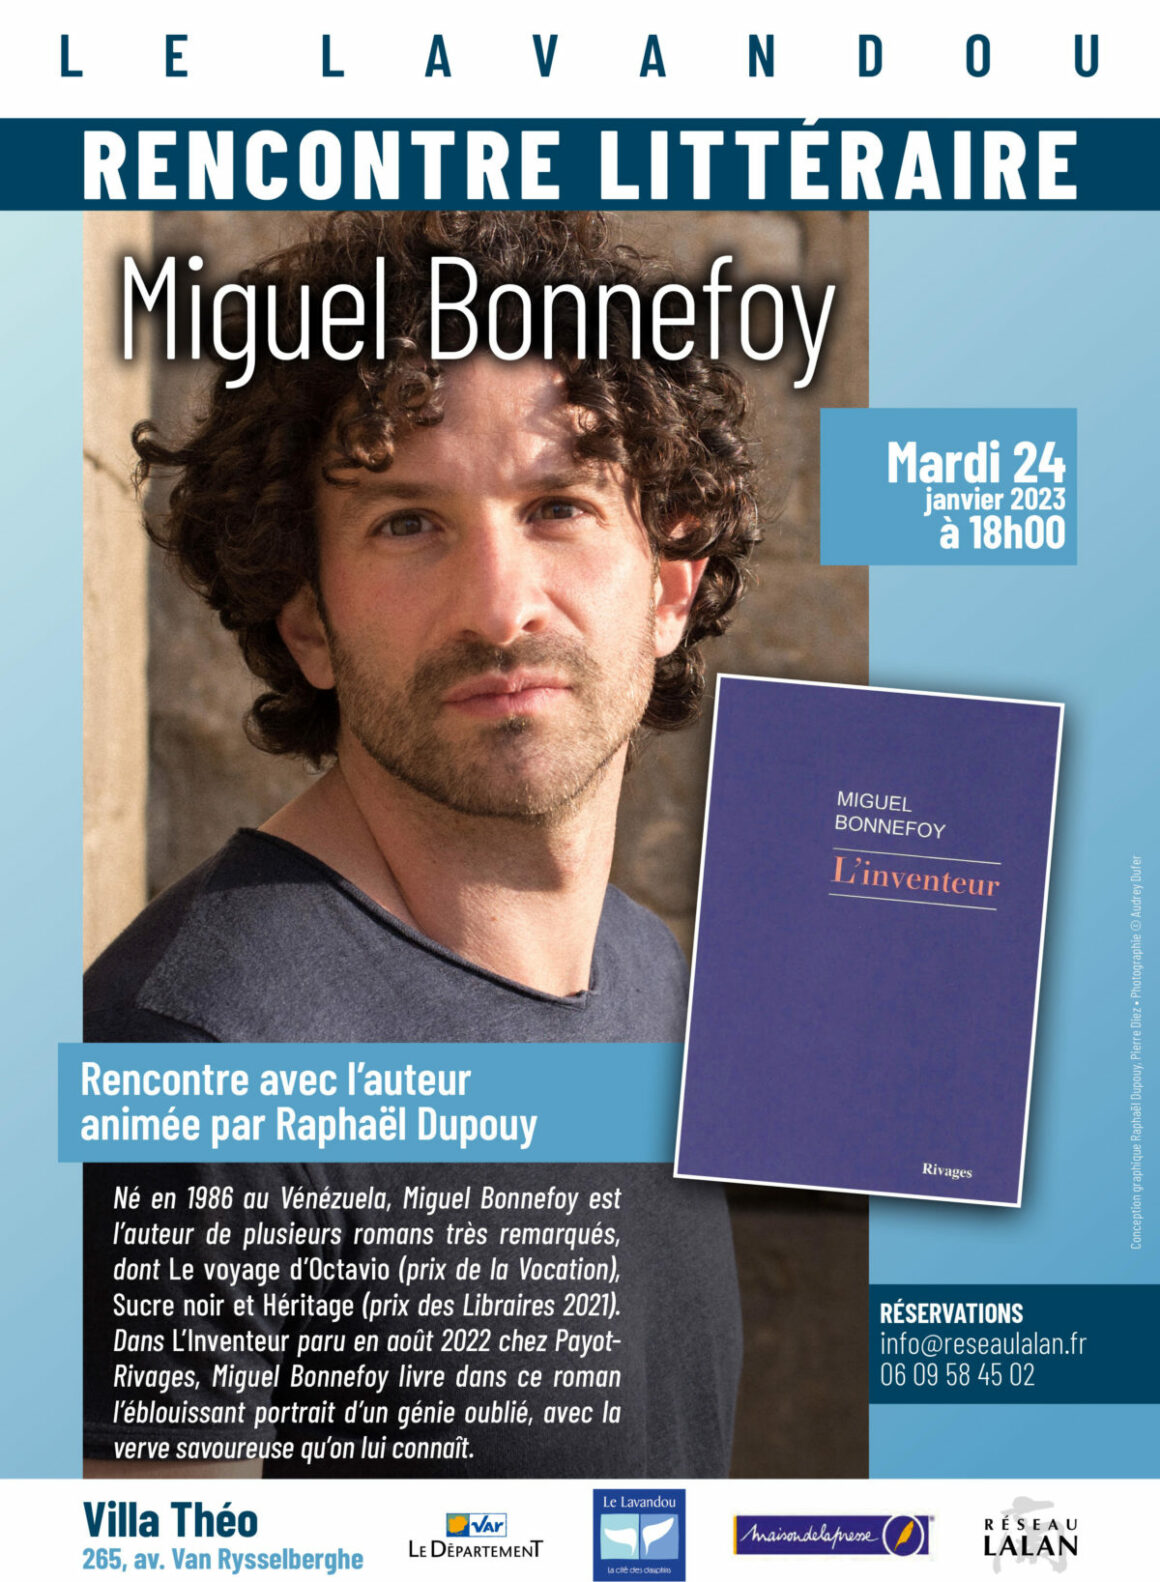 Rencontre littéraire avec Miguel Bonnefoy